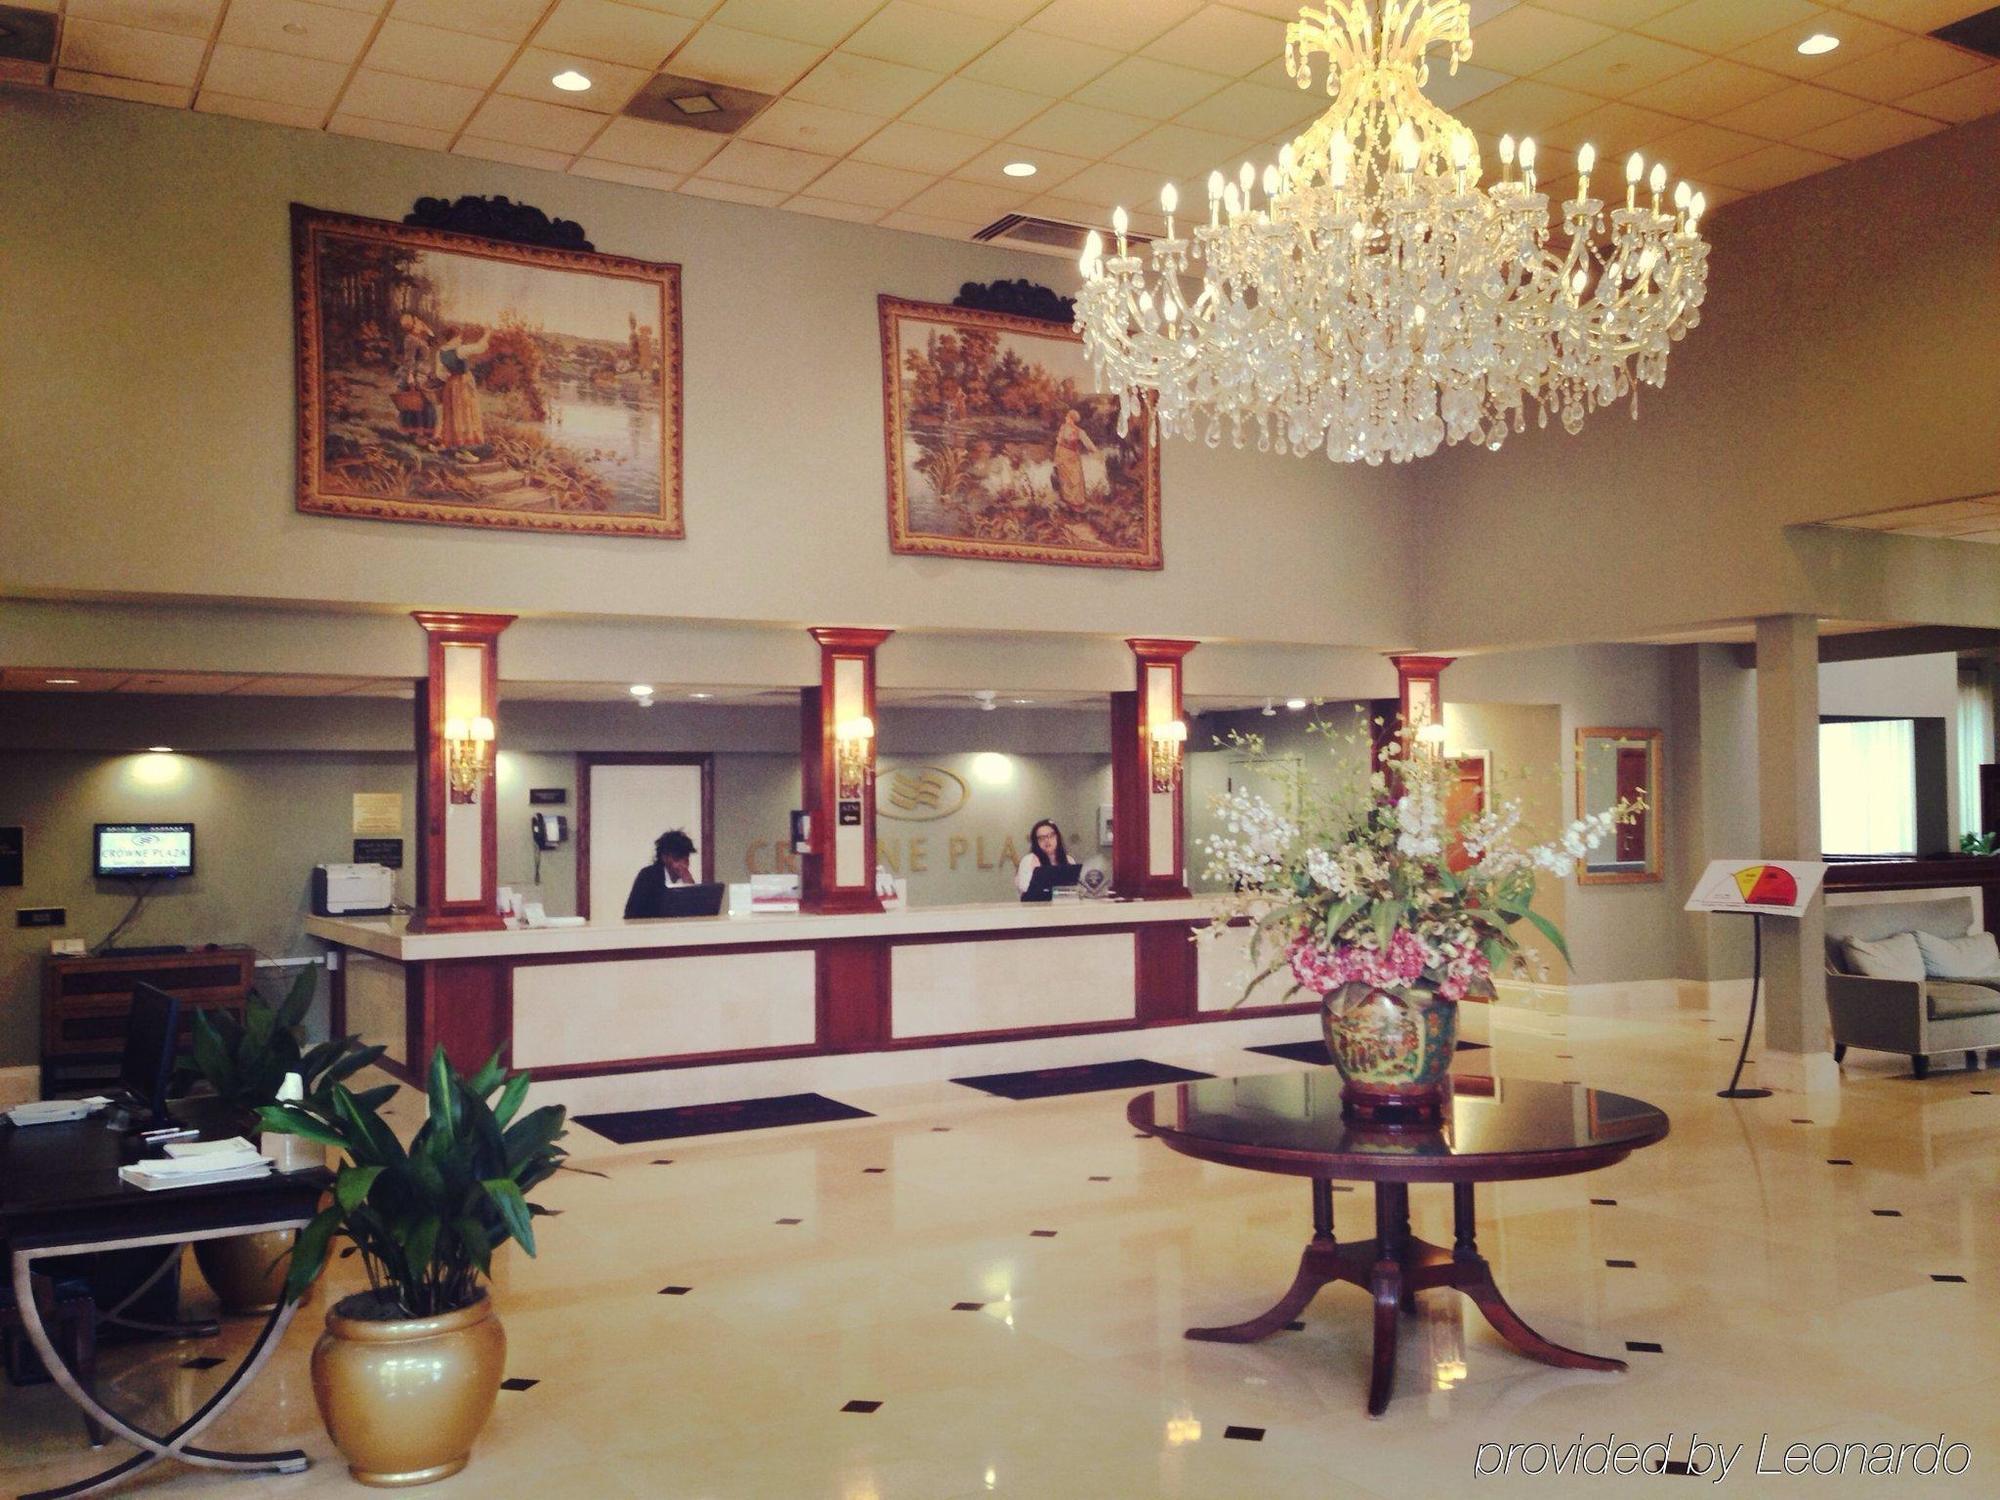 Clayton Plaza Hotel & Extended Stay Zewnętrze zdjęcie